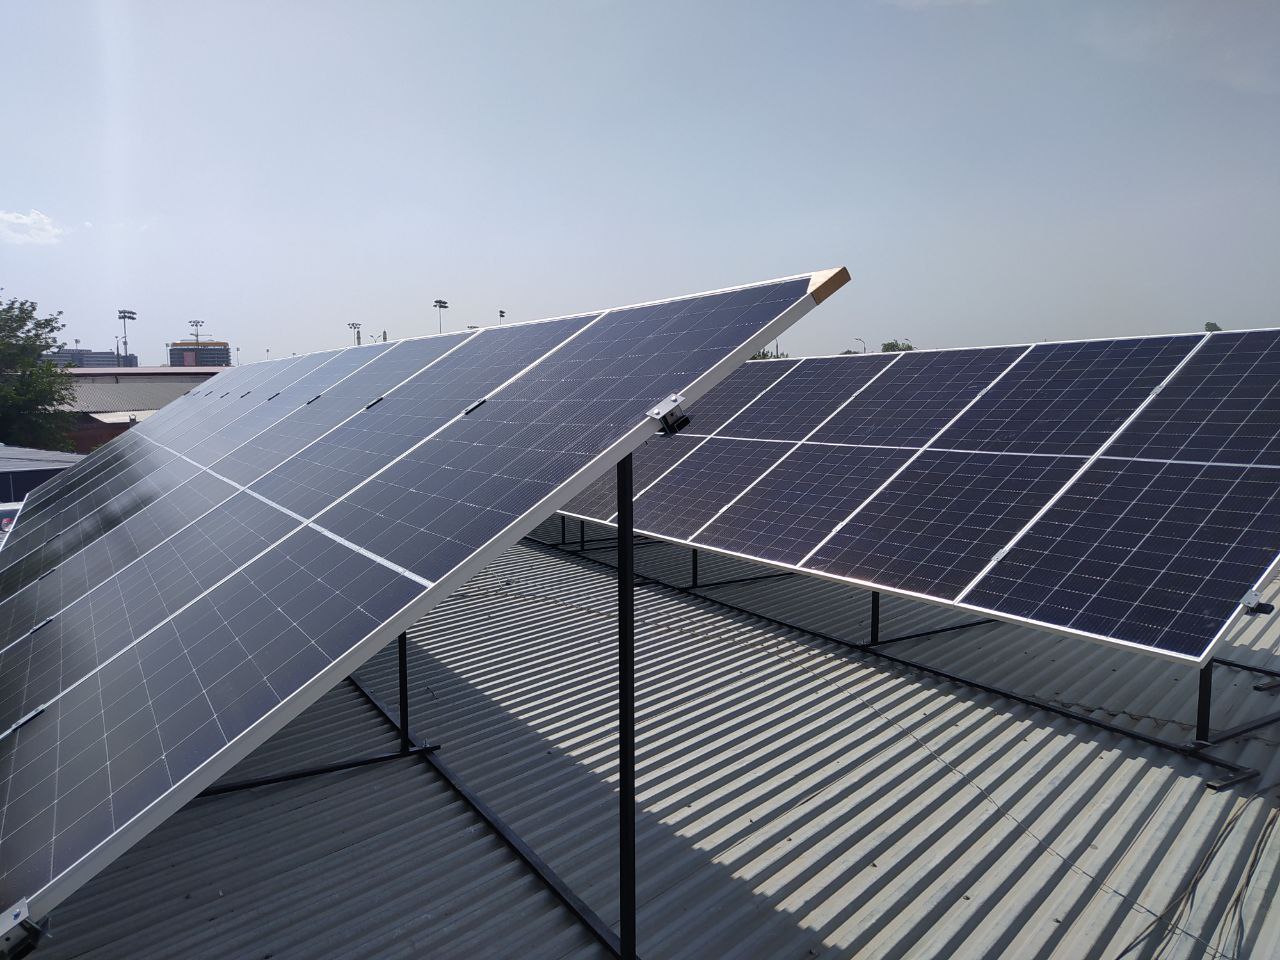 ООО «Яшил Энергия»: начаты работы по установке солнечных фотоэлектрических станций малой мощности